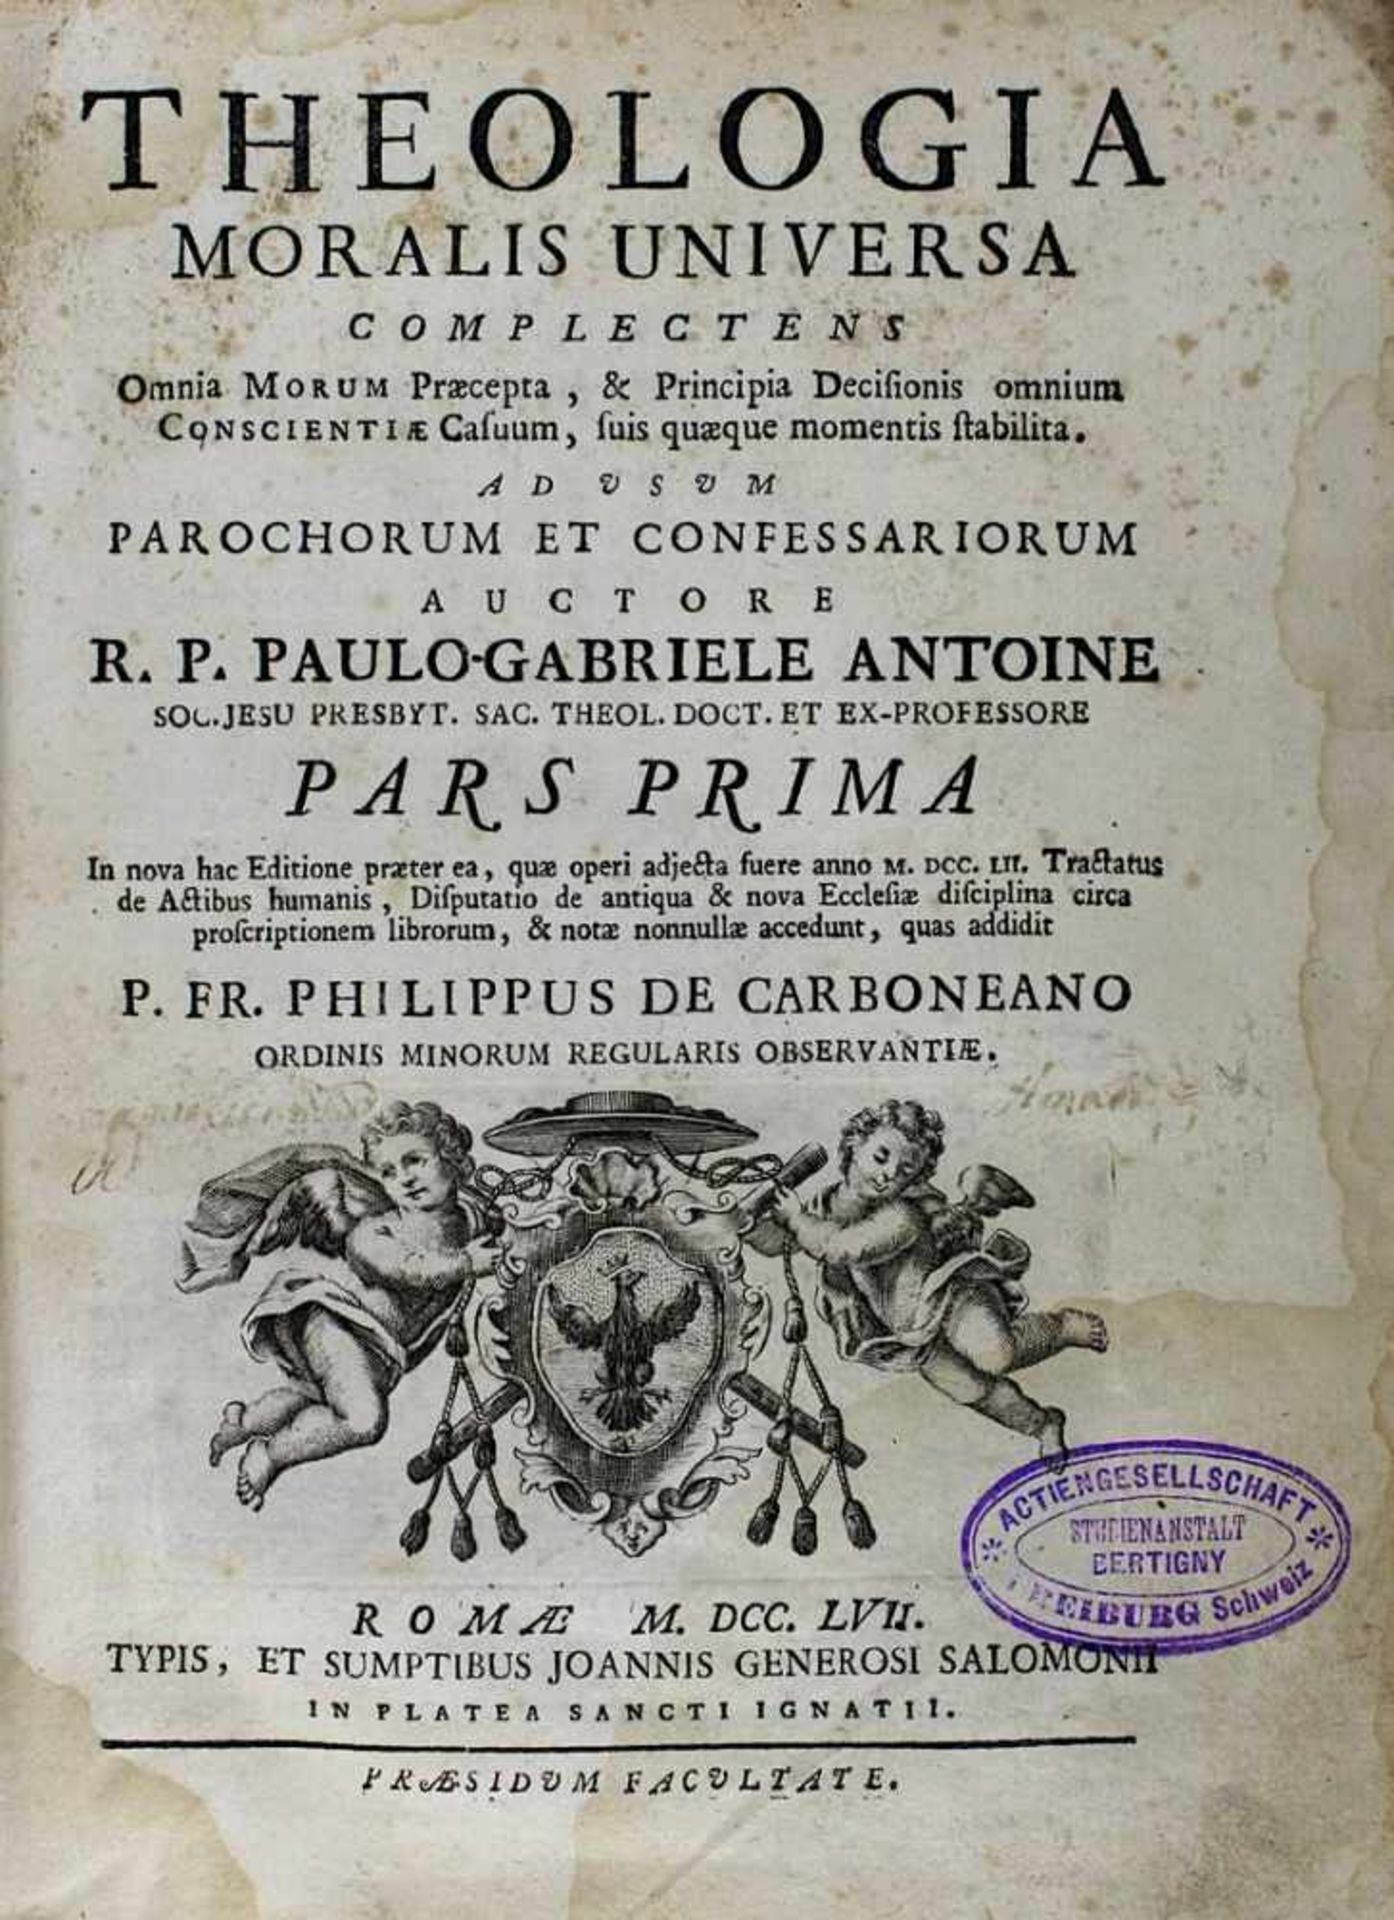 Antoine, Paulo-Gabriele: Theologia moralis universa complectens omnnia morum praecepta...Philippus